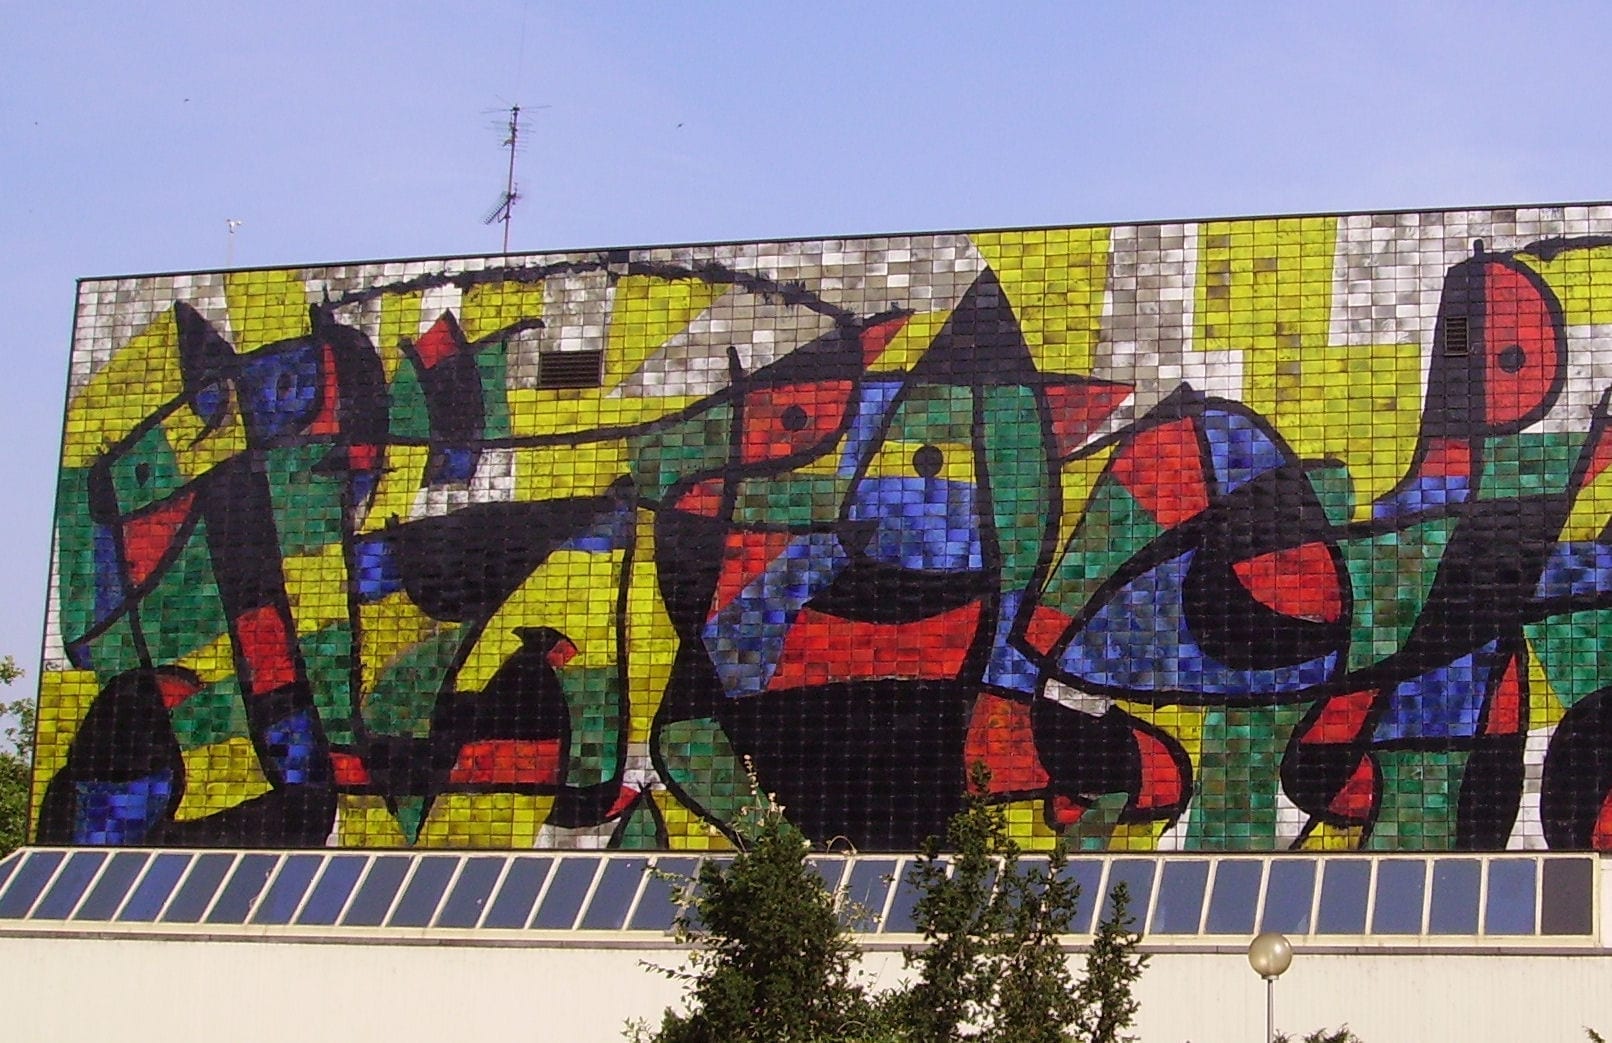 El mural de Miró, conocido como la Varita Miró, en el Museo Wilhelm-Hack. Ludwigshafen am Rhein Alemania